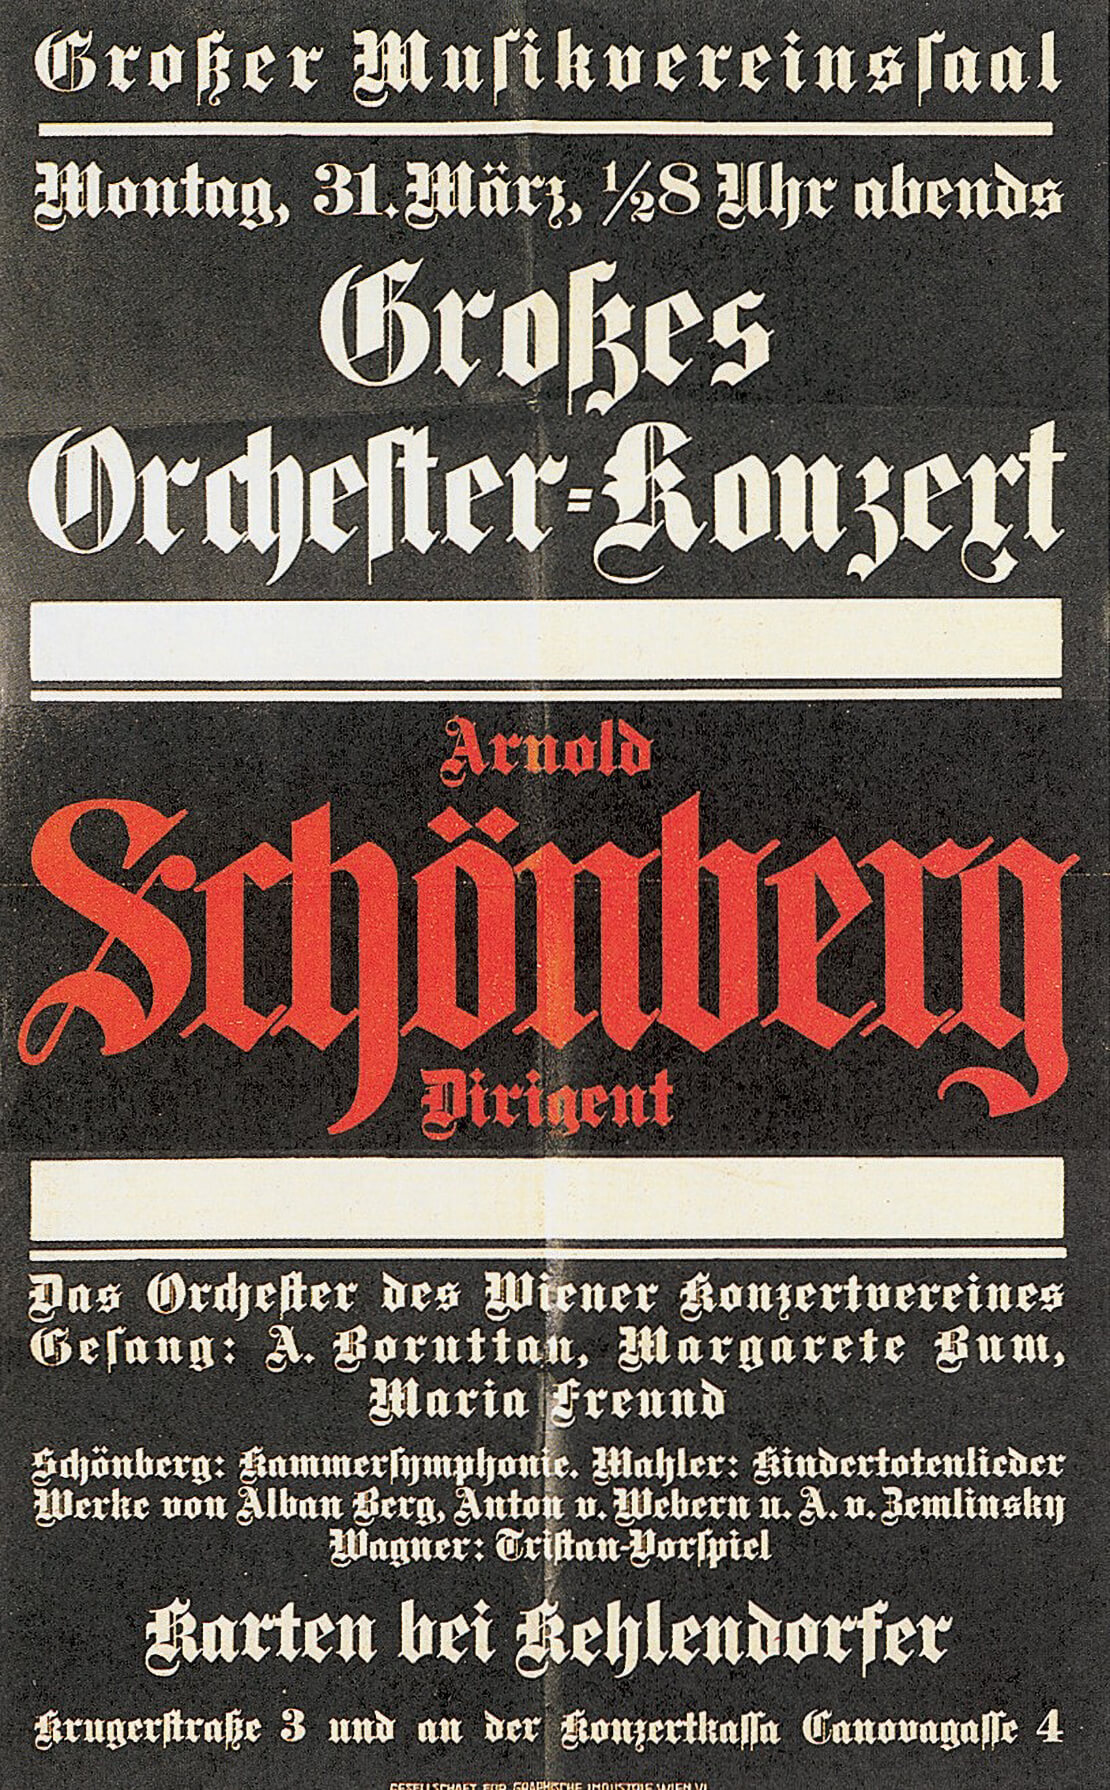 Plakat zum von Arnold Schönberg geleiteten Skandal-Konzert am 31. März 1913. Farblithographie, 1913, Austrian Archives / brandstaetter images / picturedesk.com 